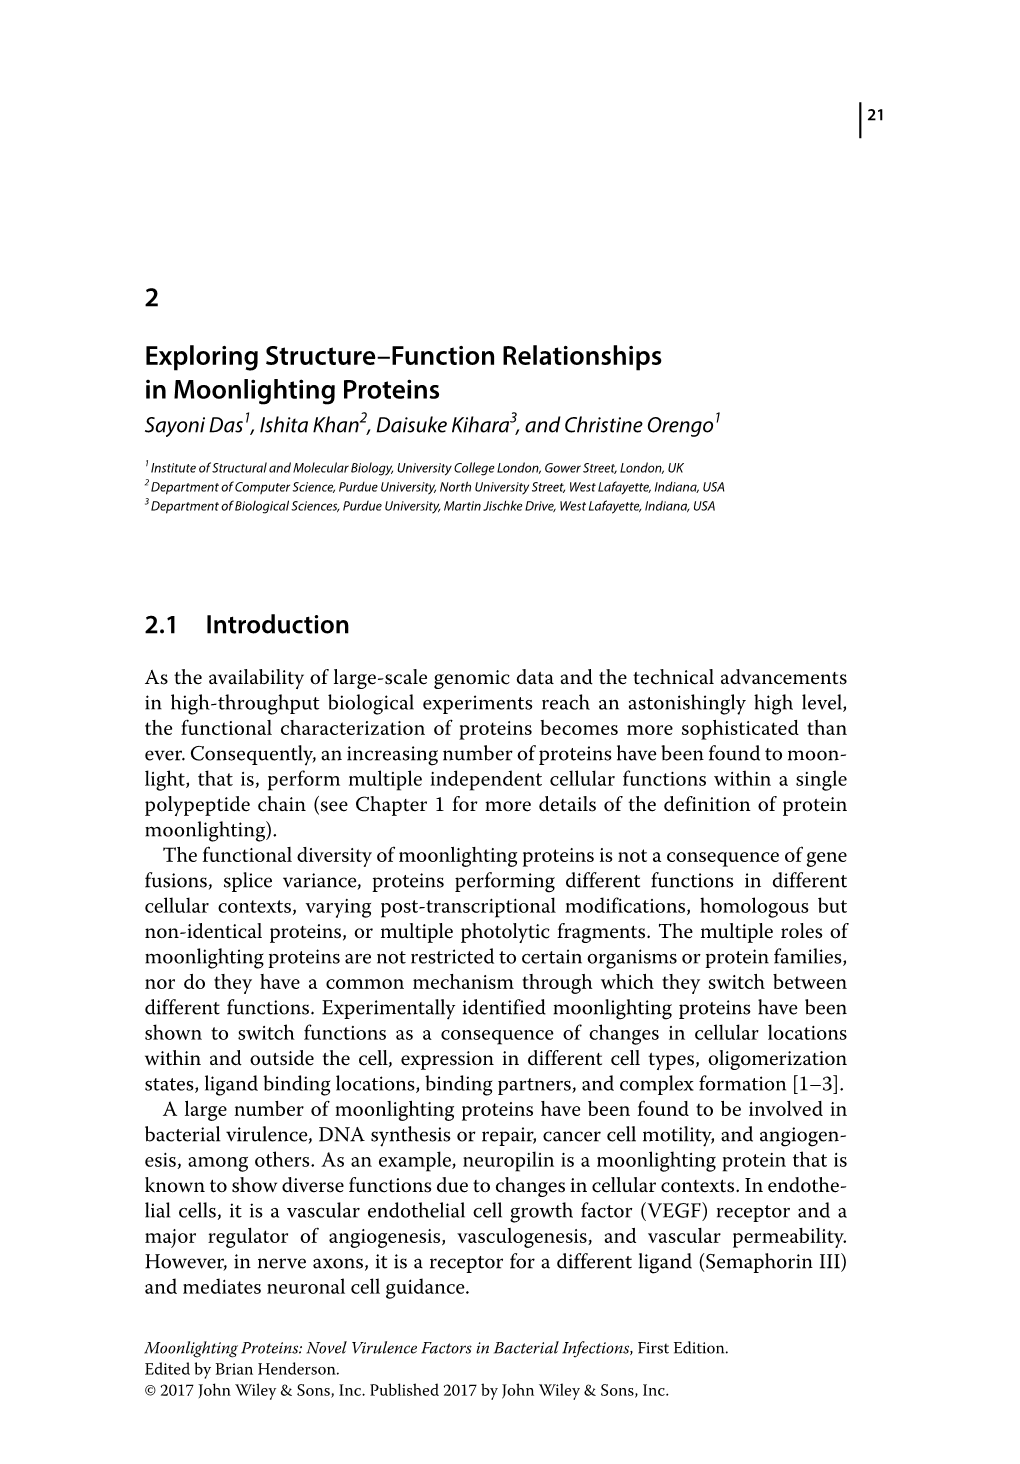 Exploring Structureâ•ﬁfunction Relationships in Moonlighting